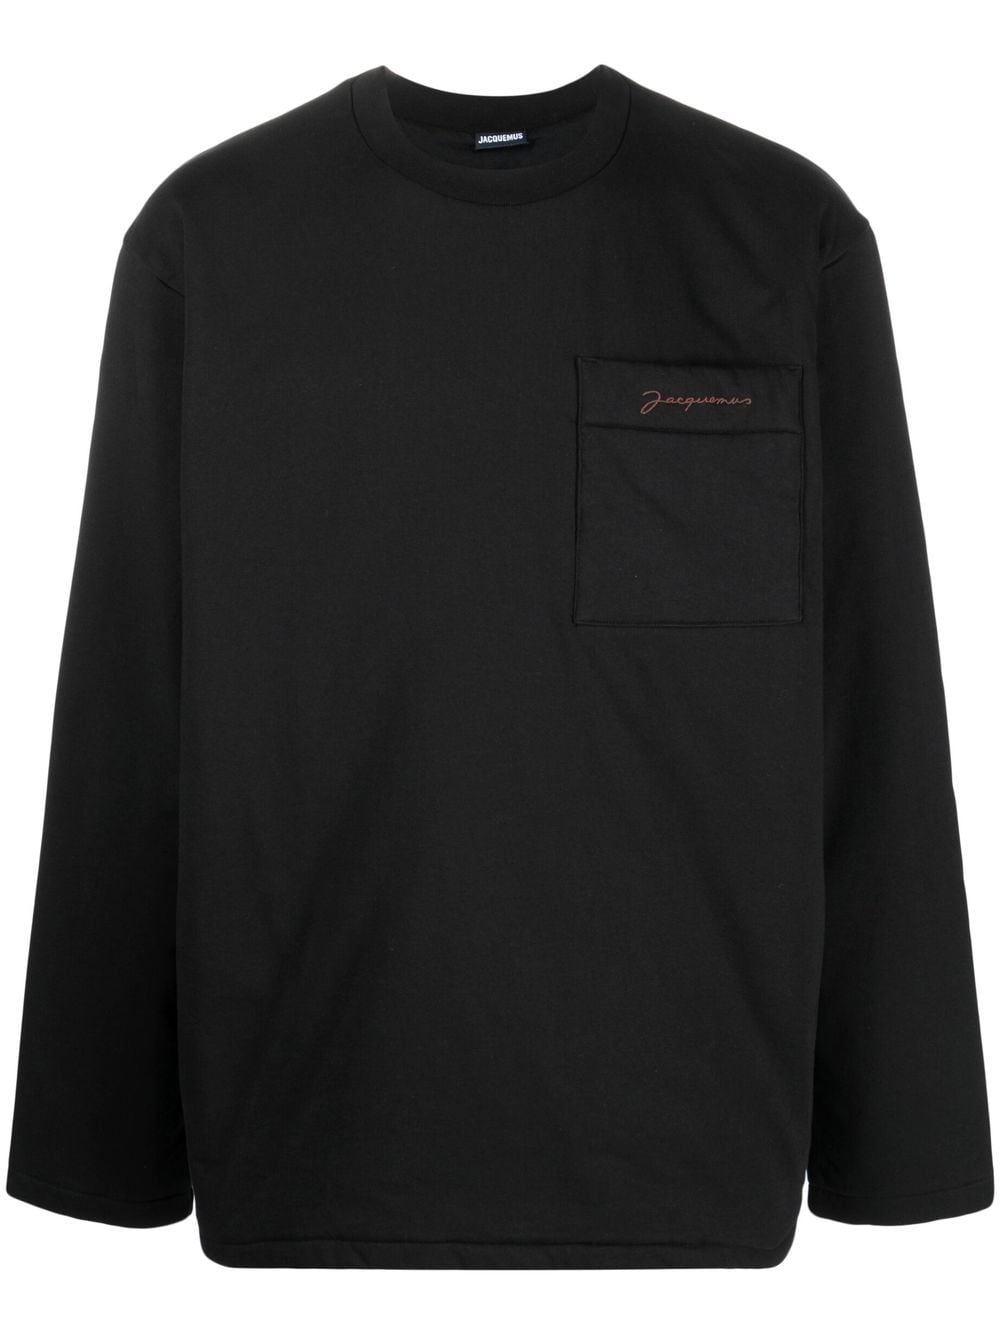 Jacquemus Le T-shirt Bricciola top met lange mouwen - Zwart